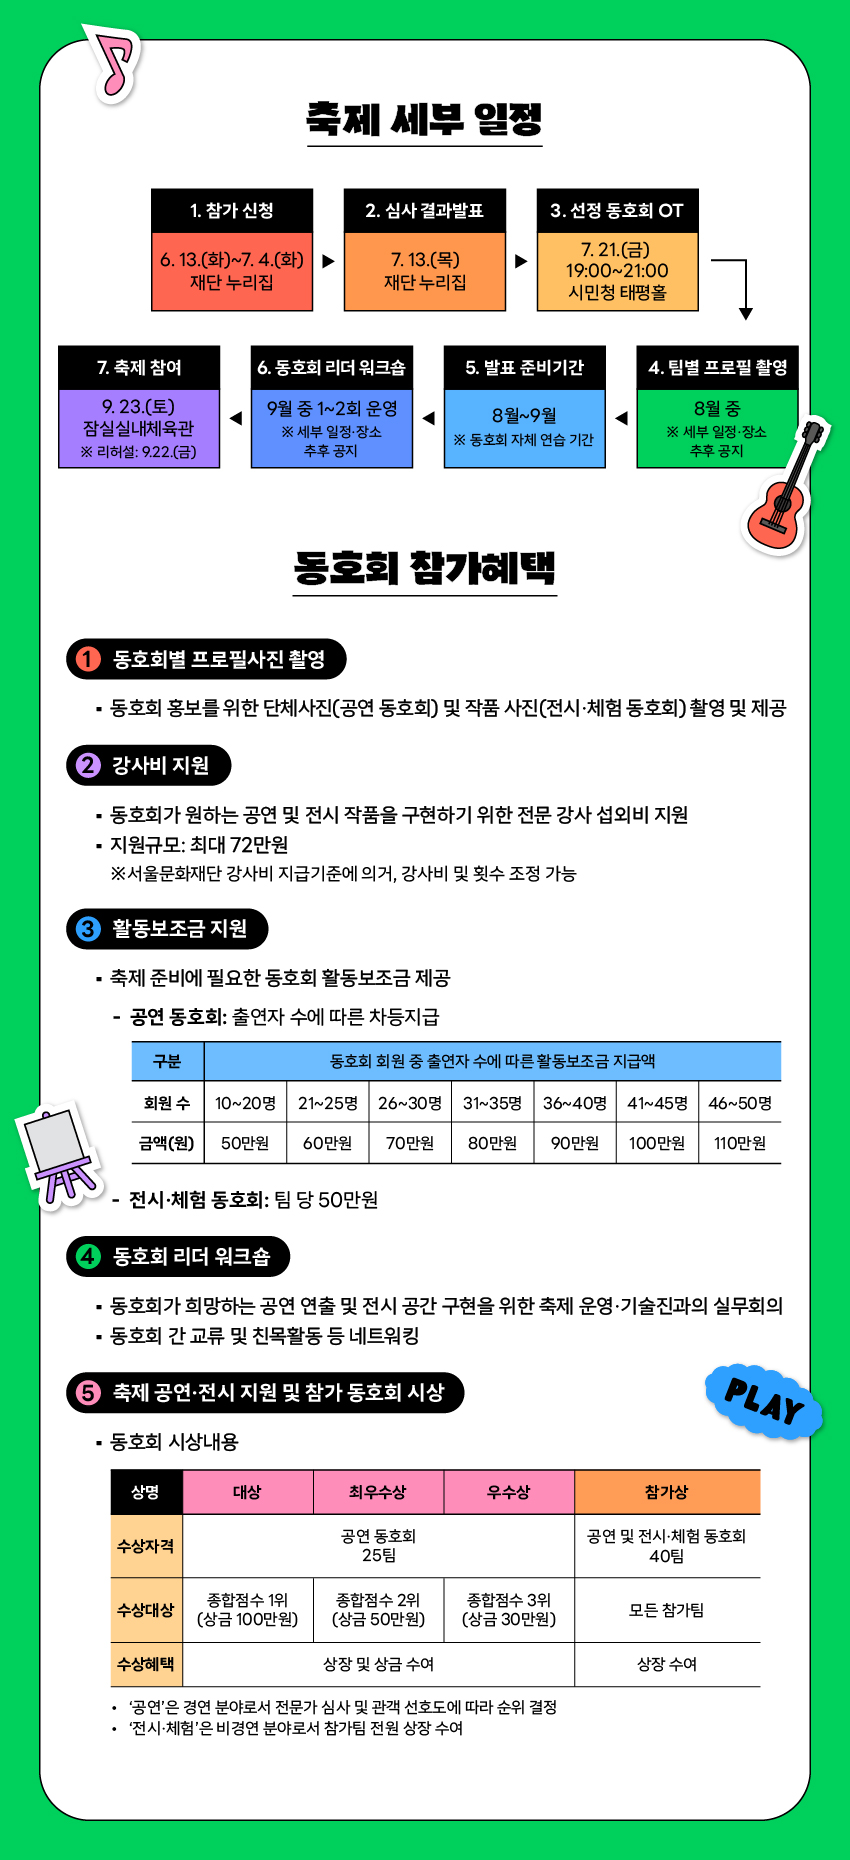 제2회 서울생활예술페스티벌_참가 동호회 공모_웹플라이어2